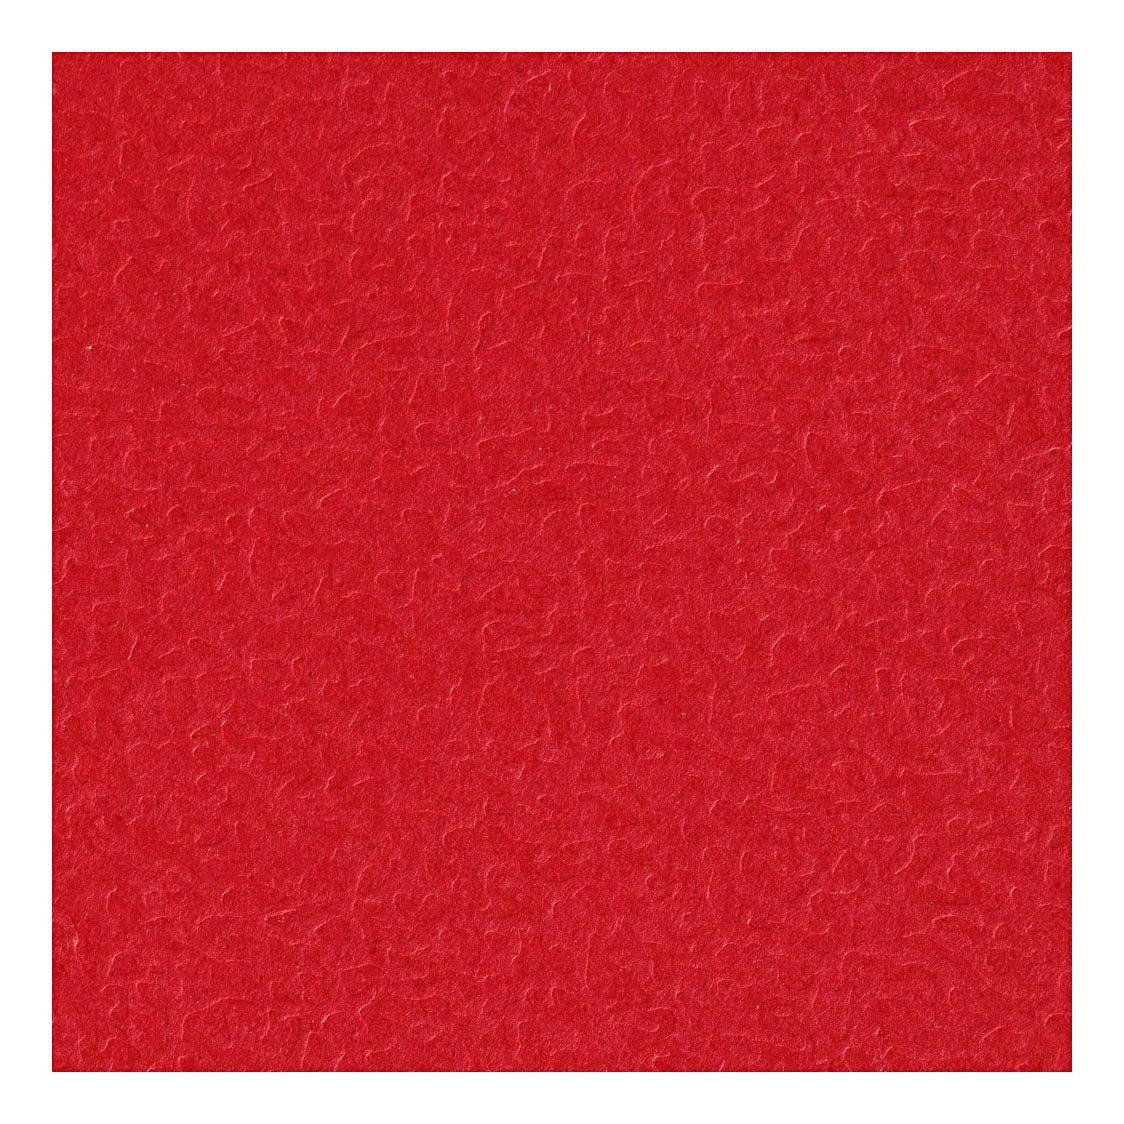 Creativ Company Cartone rosso A4 220g, 10 pezzi.